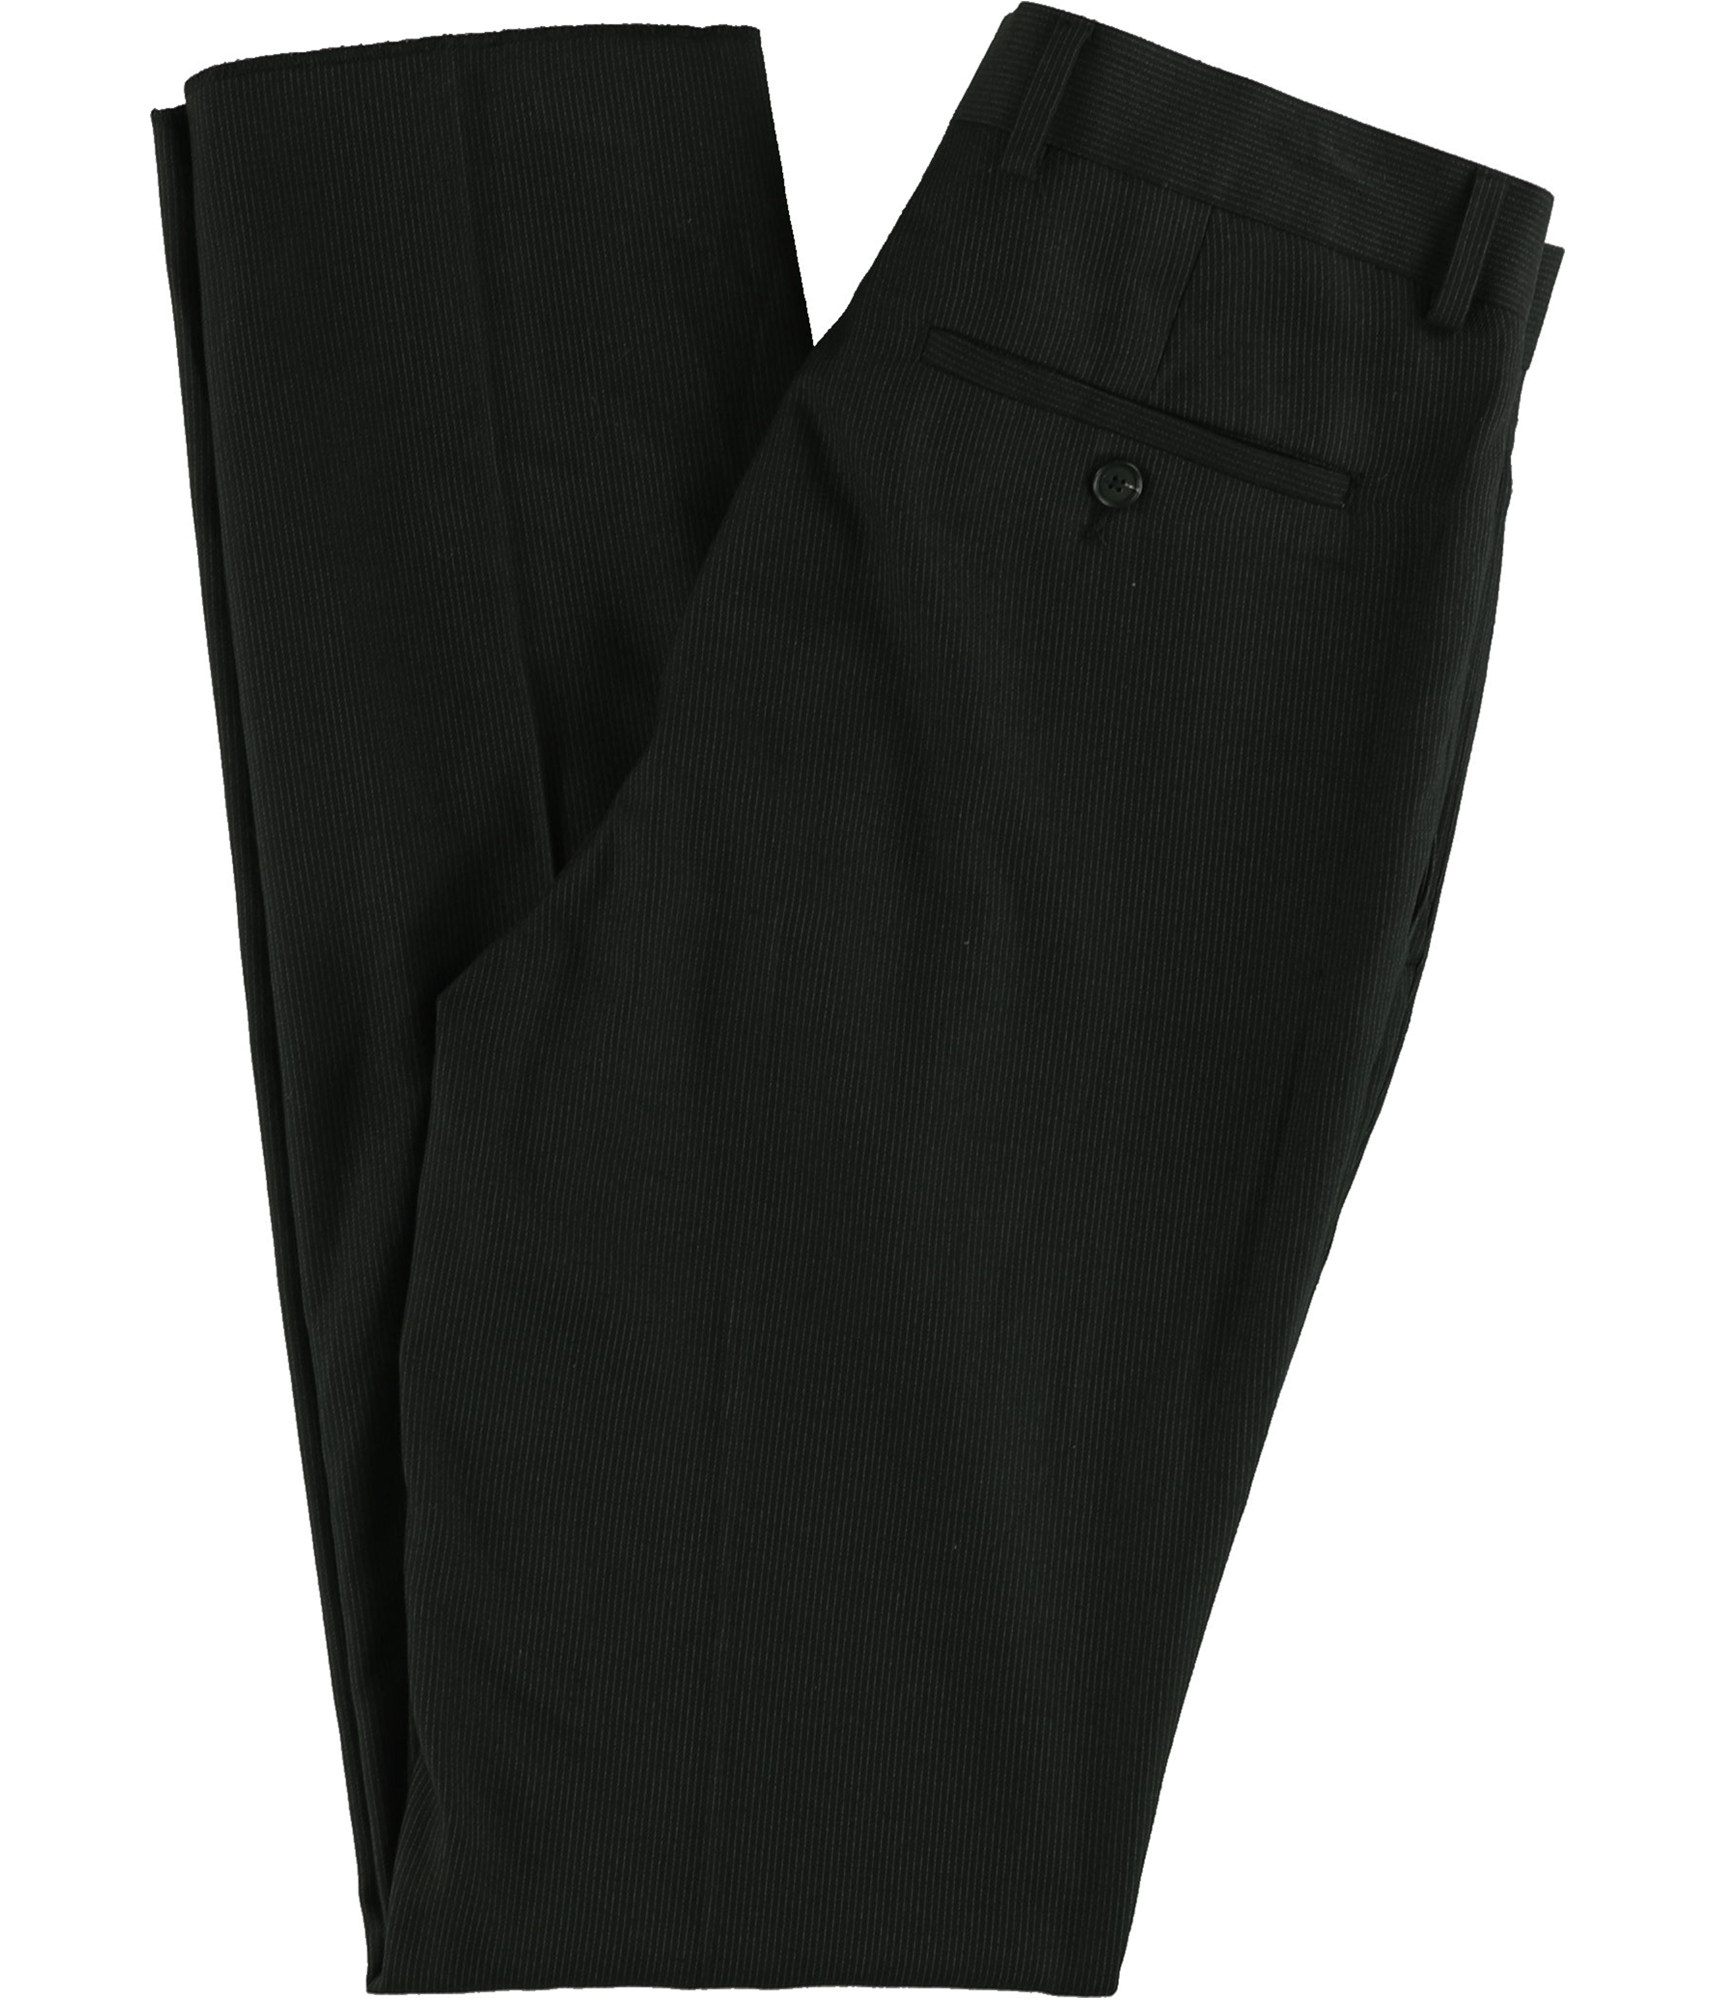 Kenneth Cole Mens Patterned Dress Pants Slacks | eBay